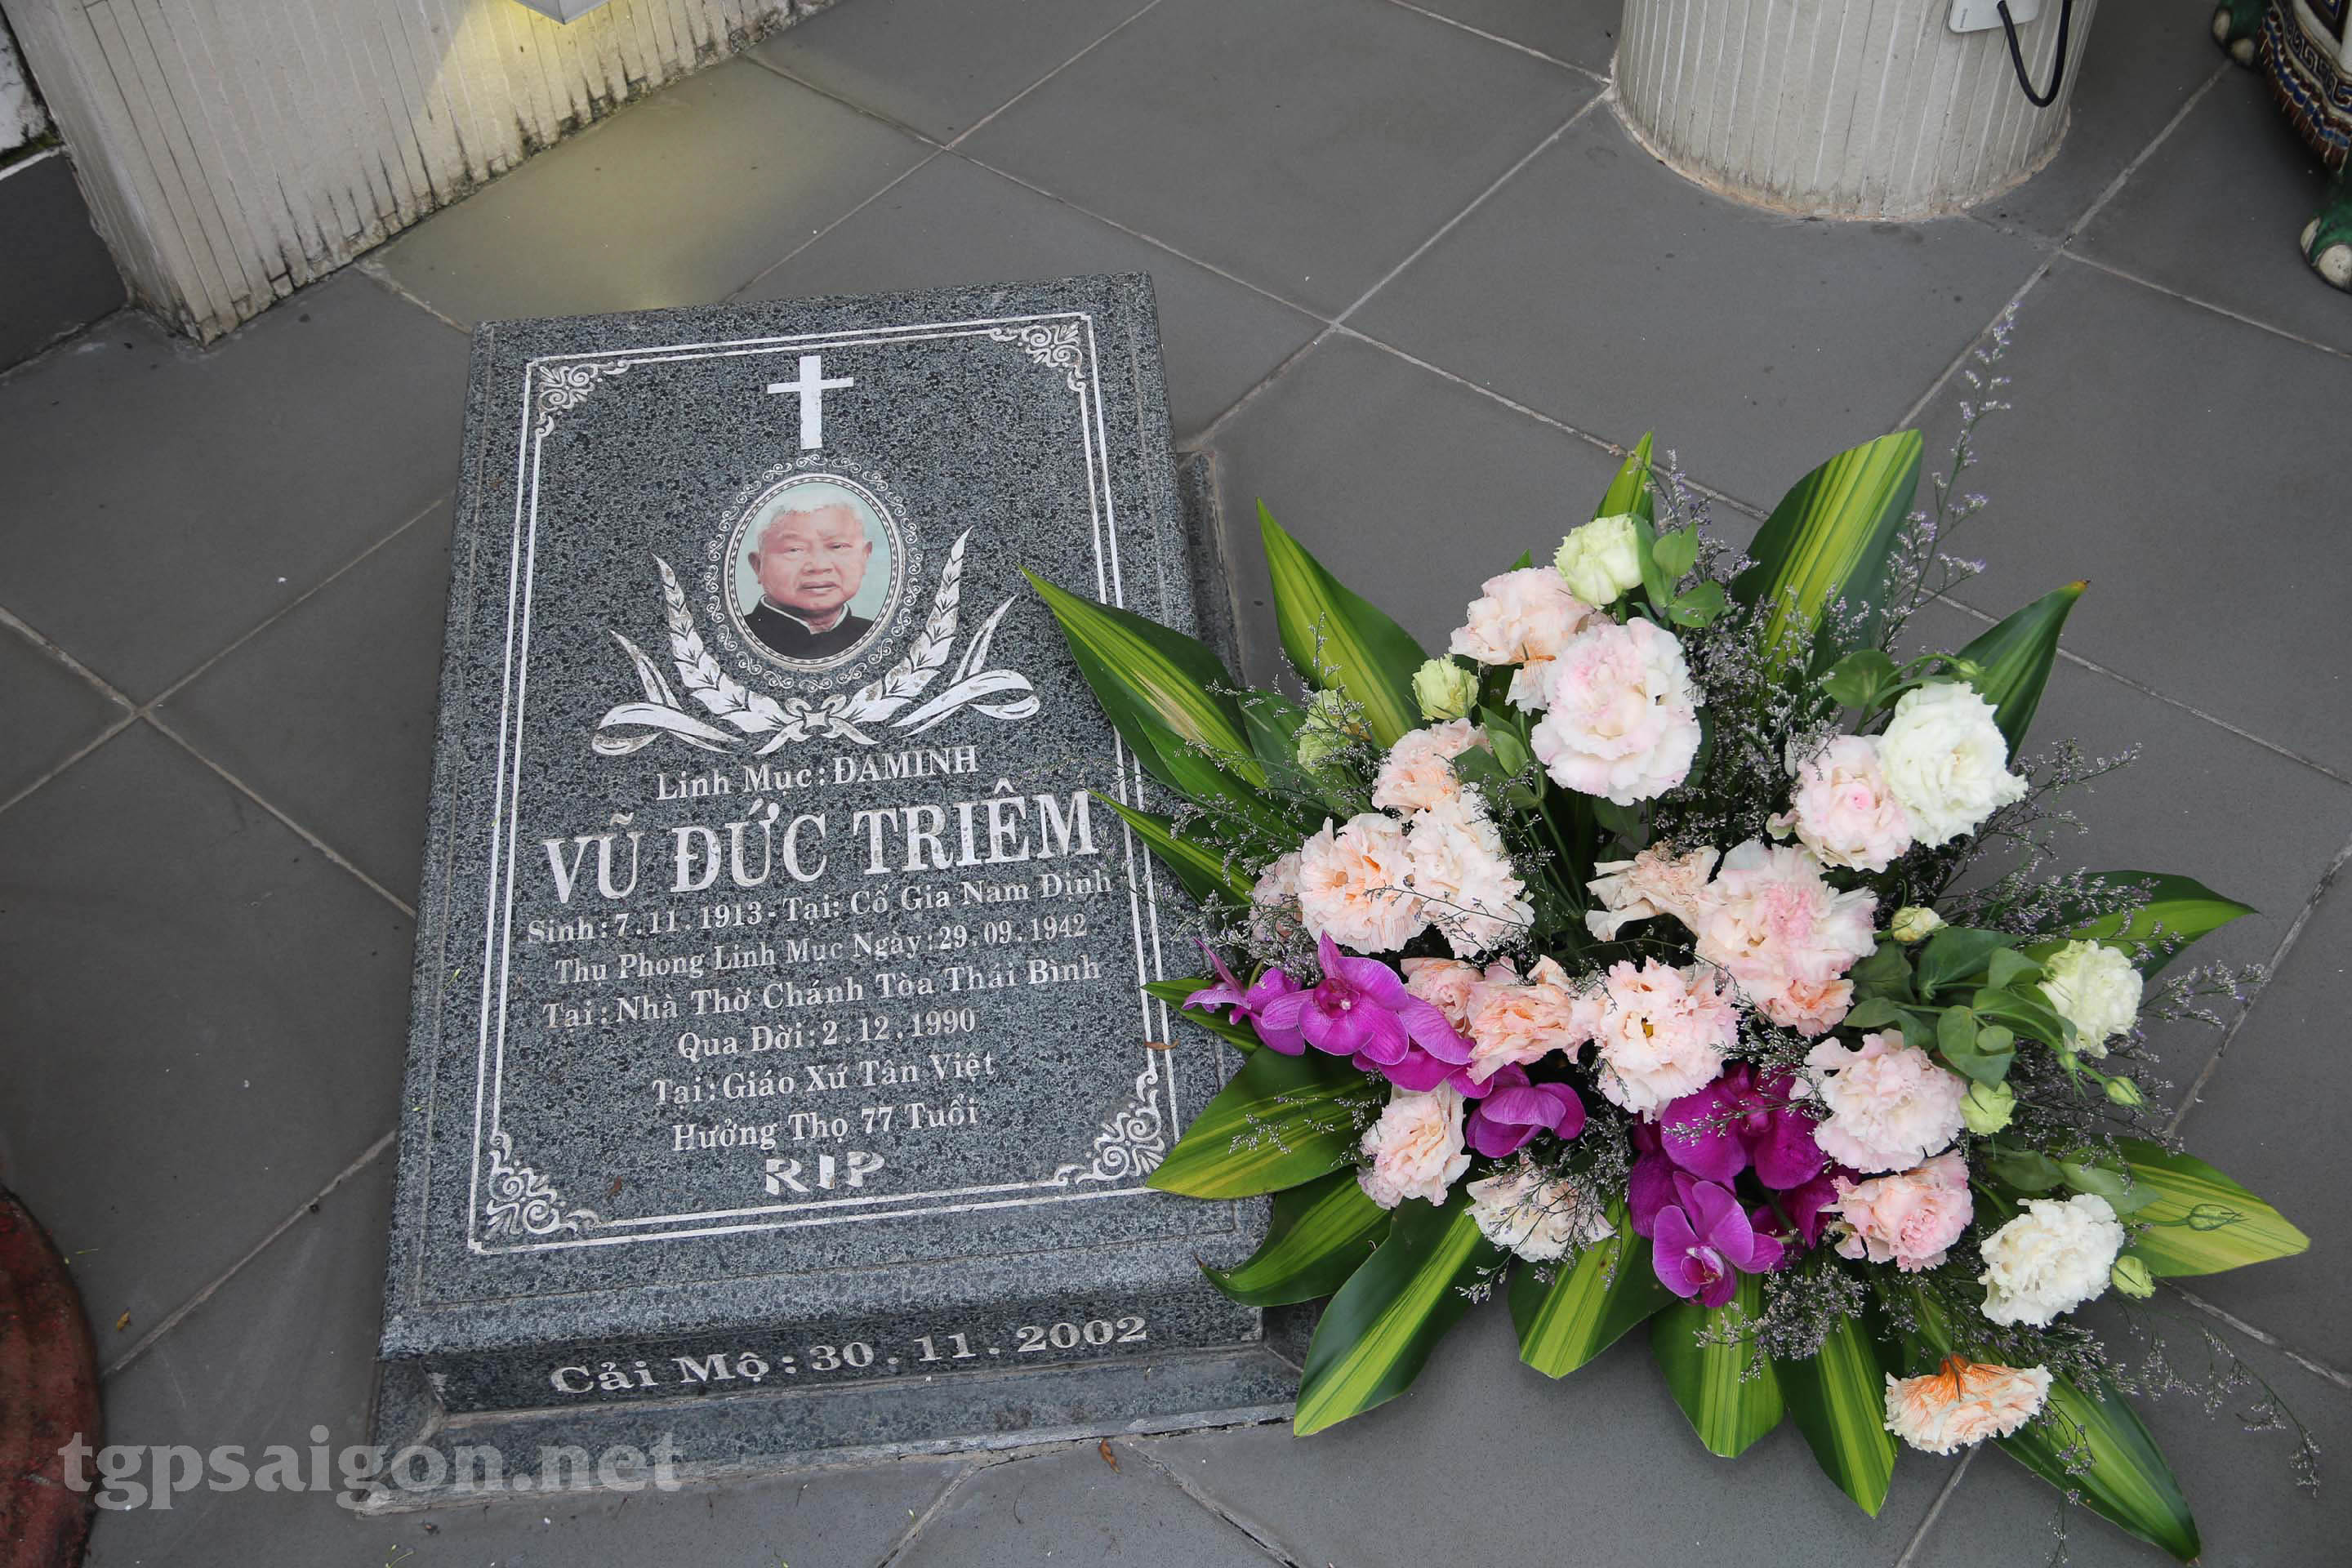 Giáo xứ Tân Việt: Lễ giỗ Cố linh mục Đaminh Vũ Đức Triêm 2-12-2021